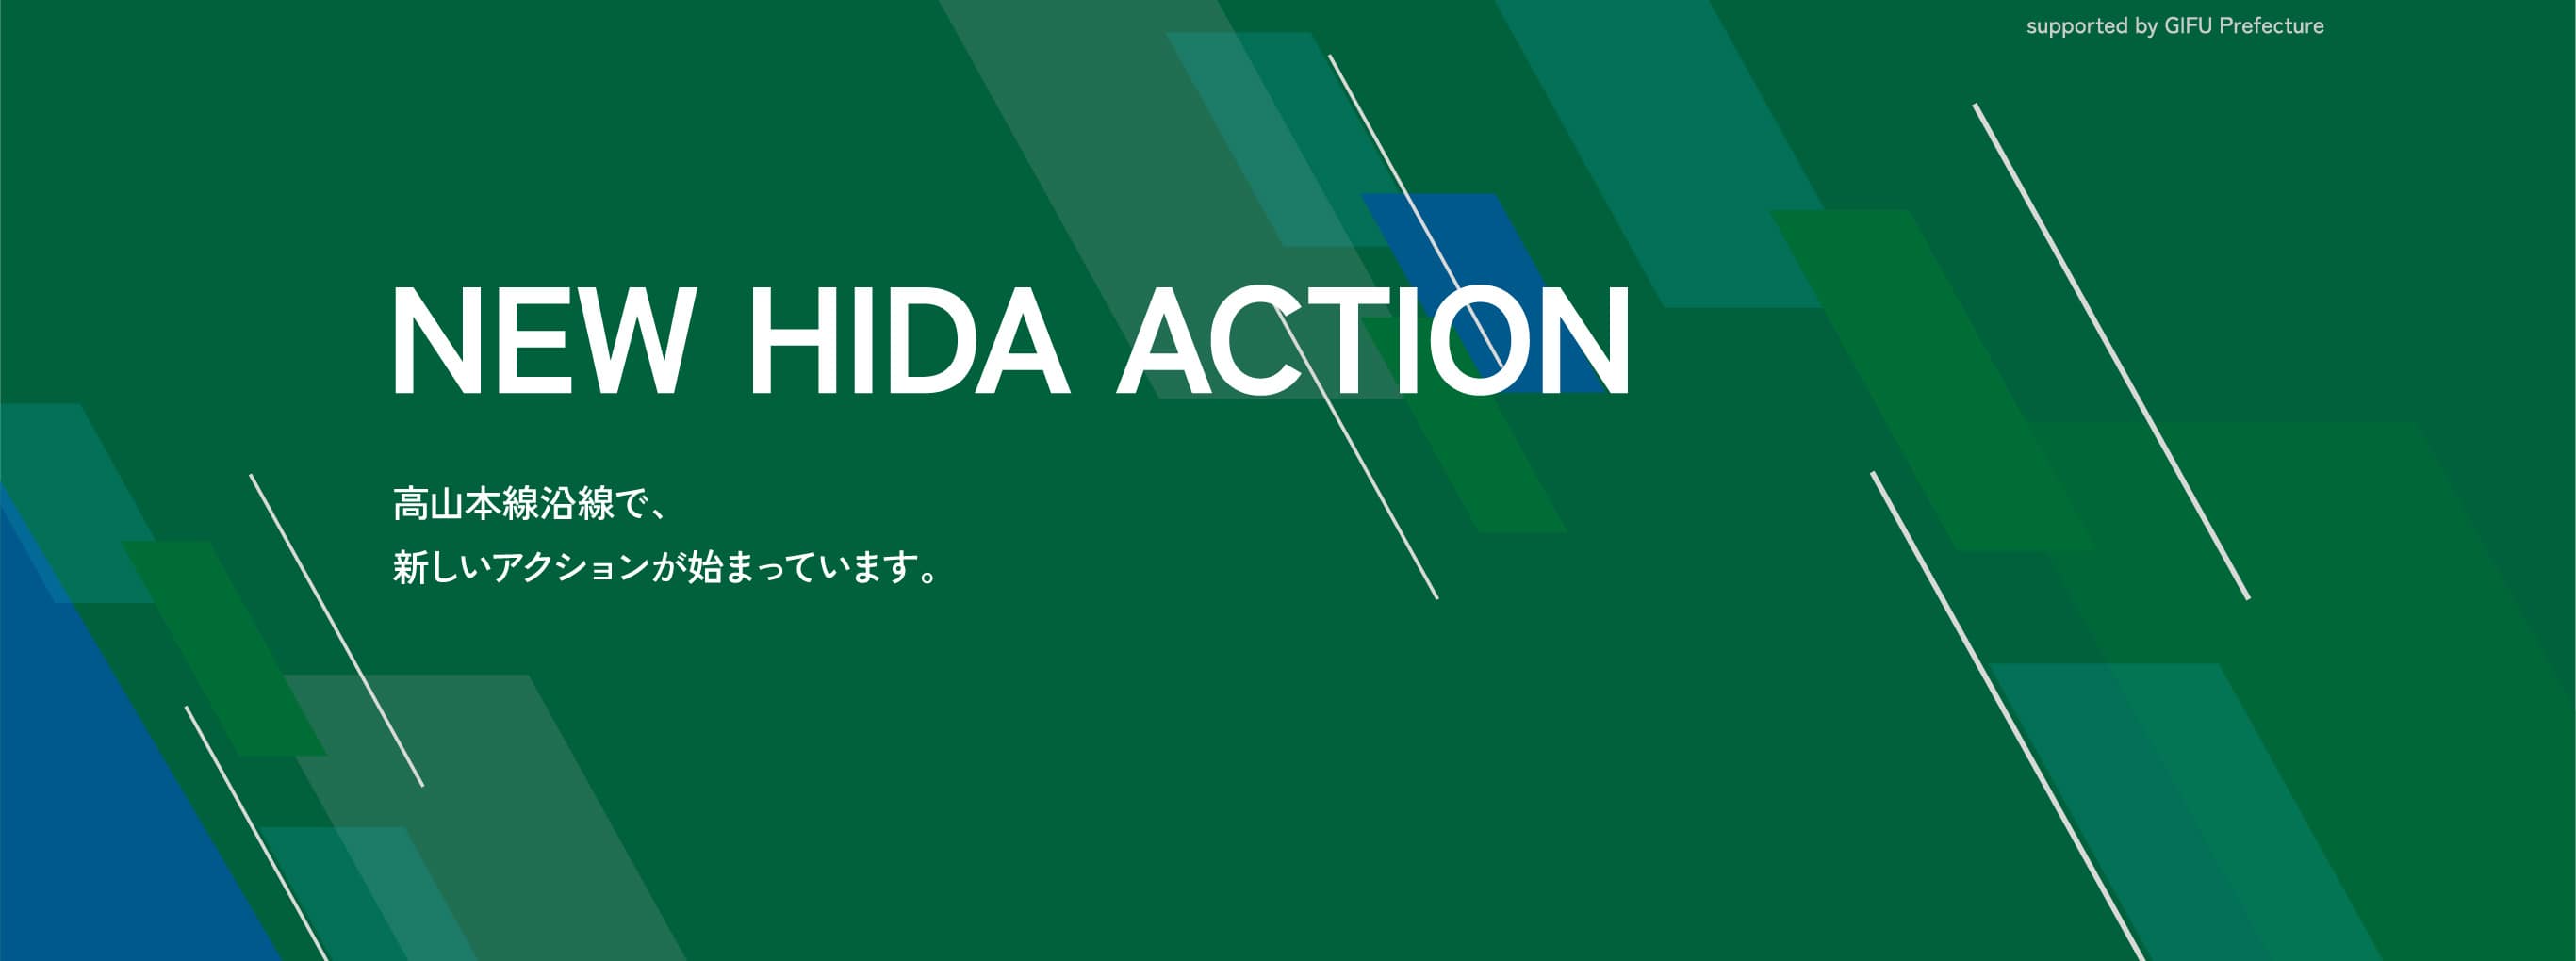 NEW HIDA ACTION 高山本線沿線で、新しいアクションが始まっています。